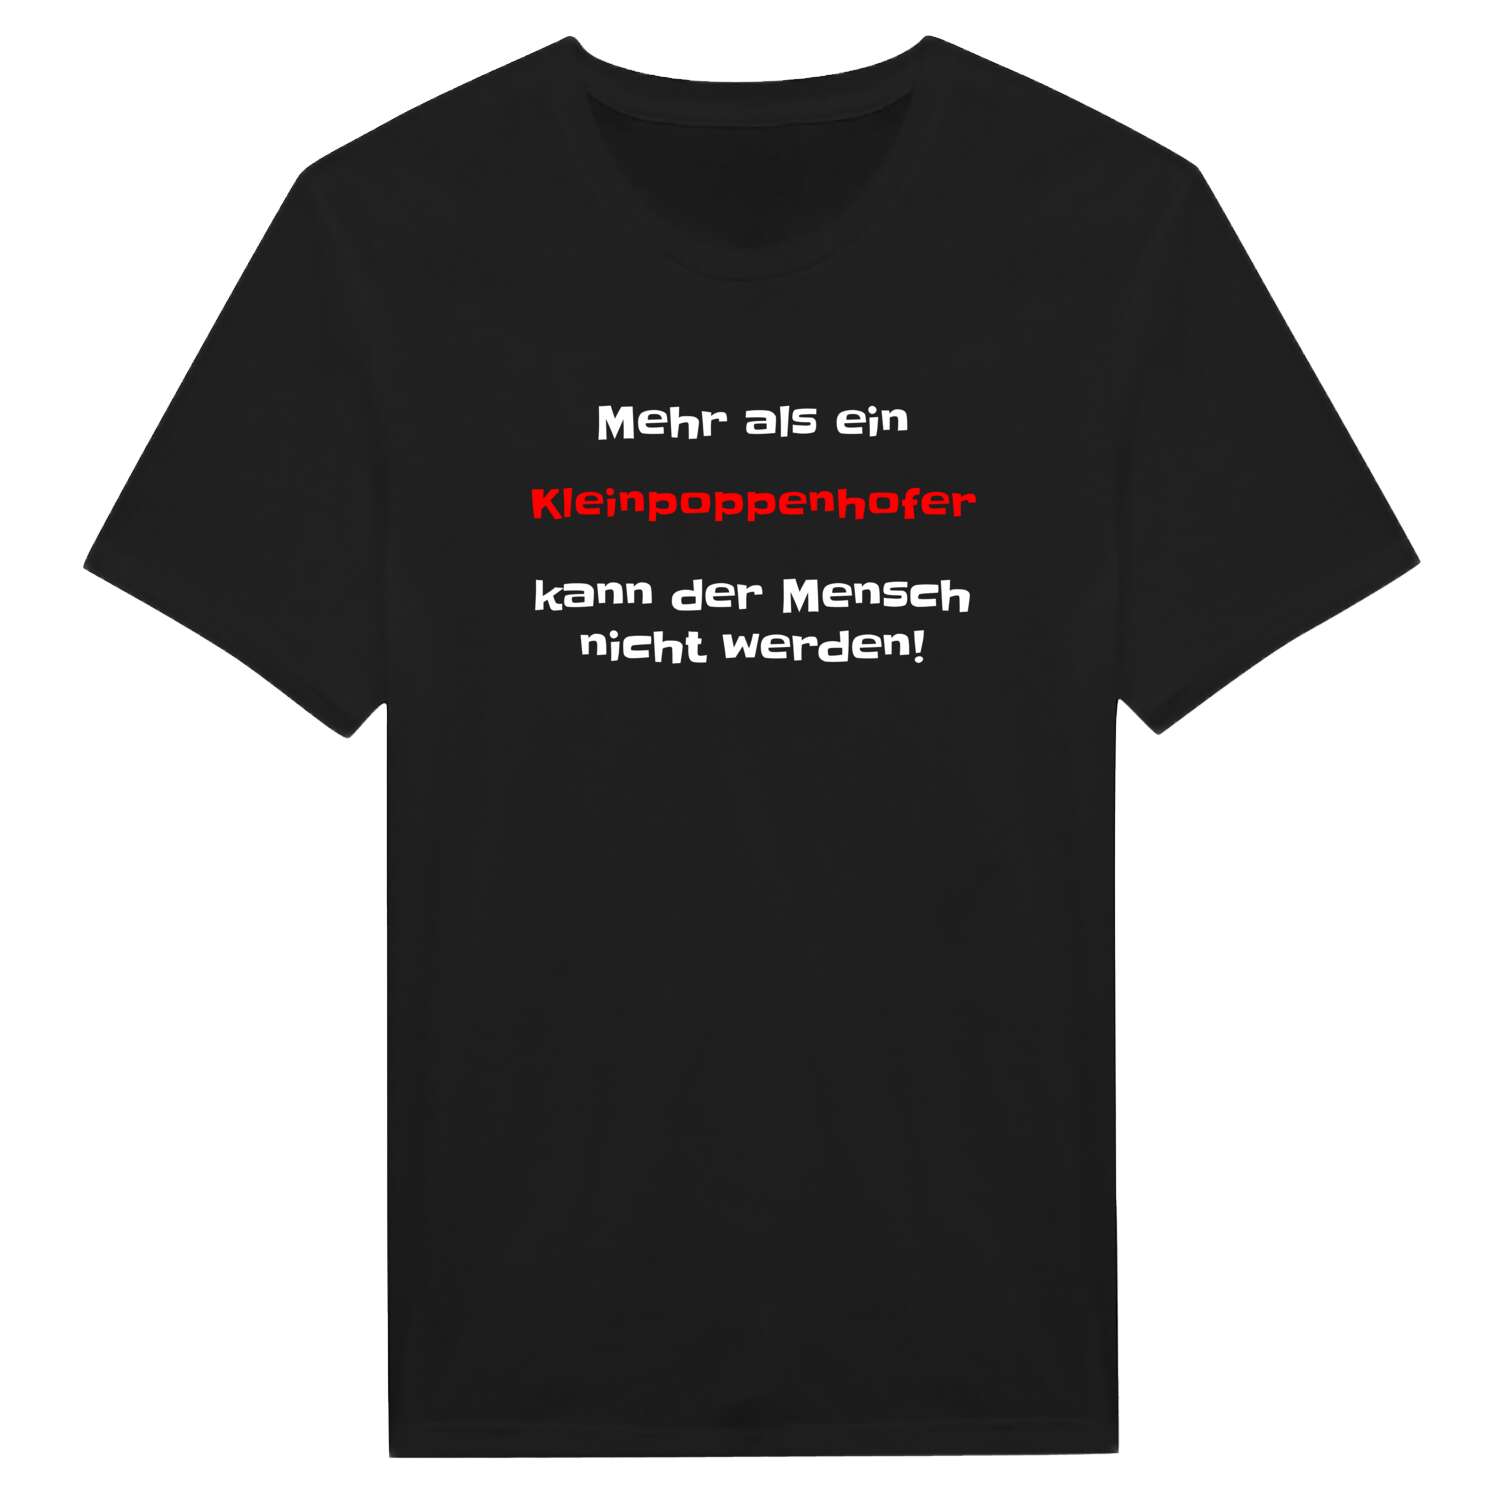 Kleinpoppenhof T-Shirt »Mehr als ein«